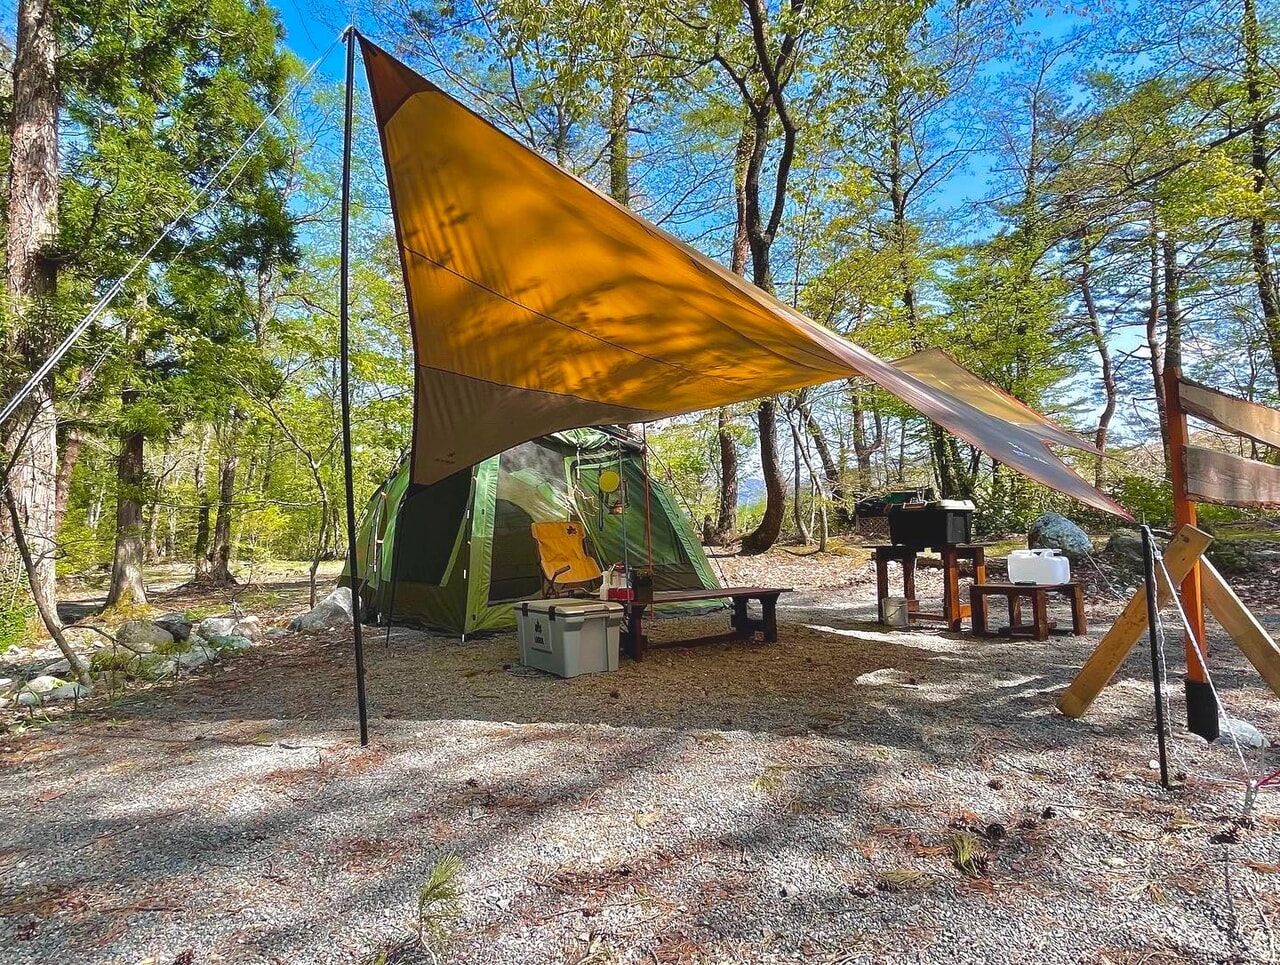 長野県白馬村の手ぶら専門キャンプ場「倉下の湯キャンプ場」がこの夏リニューアルオープン